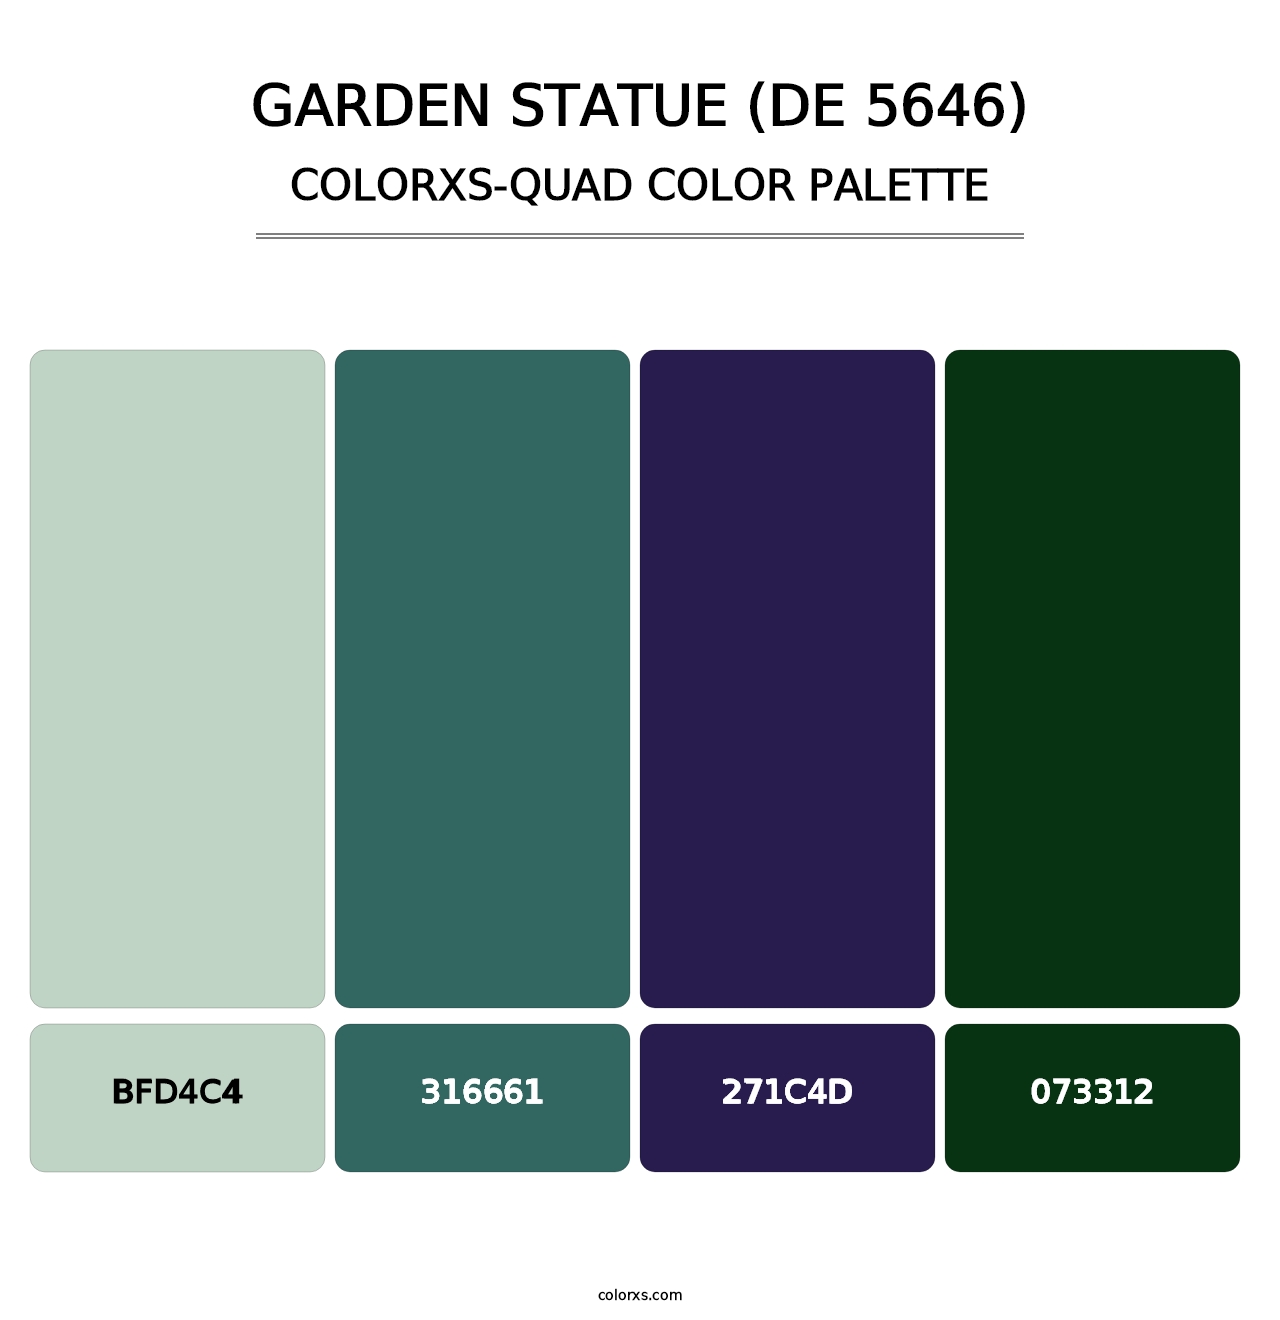 Garden Statue (DE 5646) - Colorxs Quad Palette